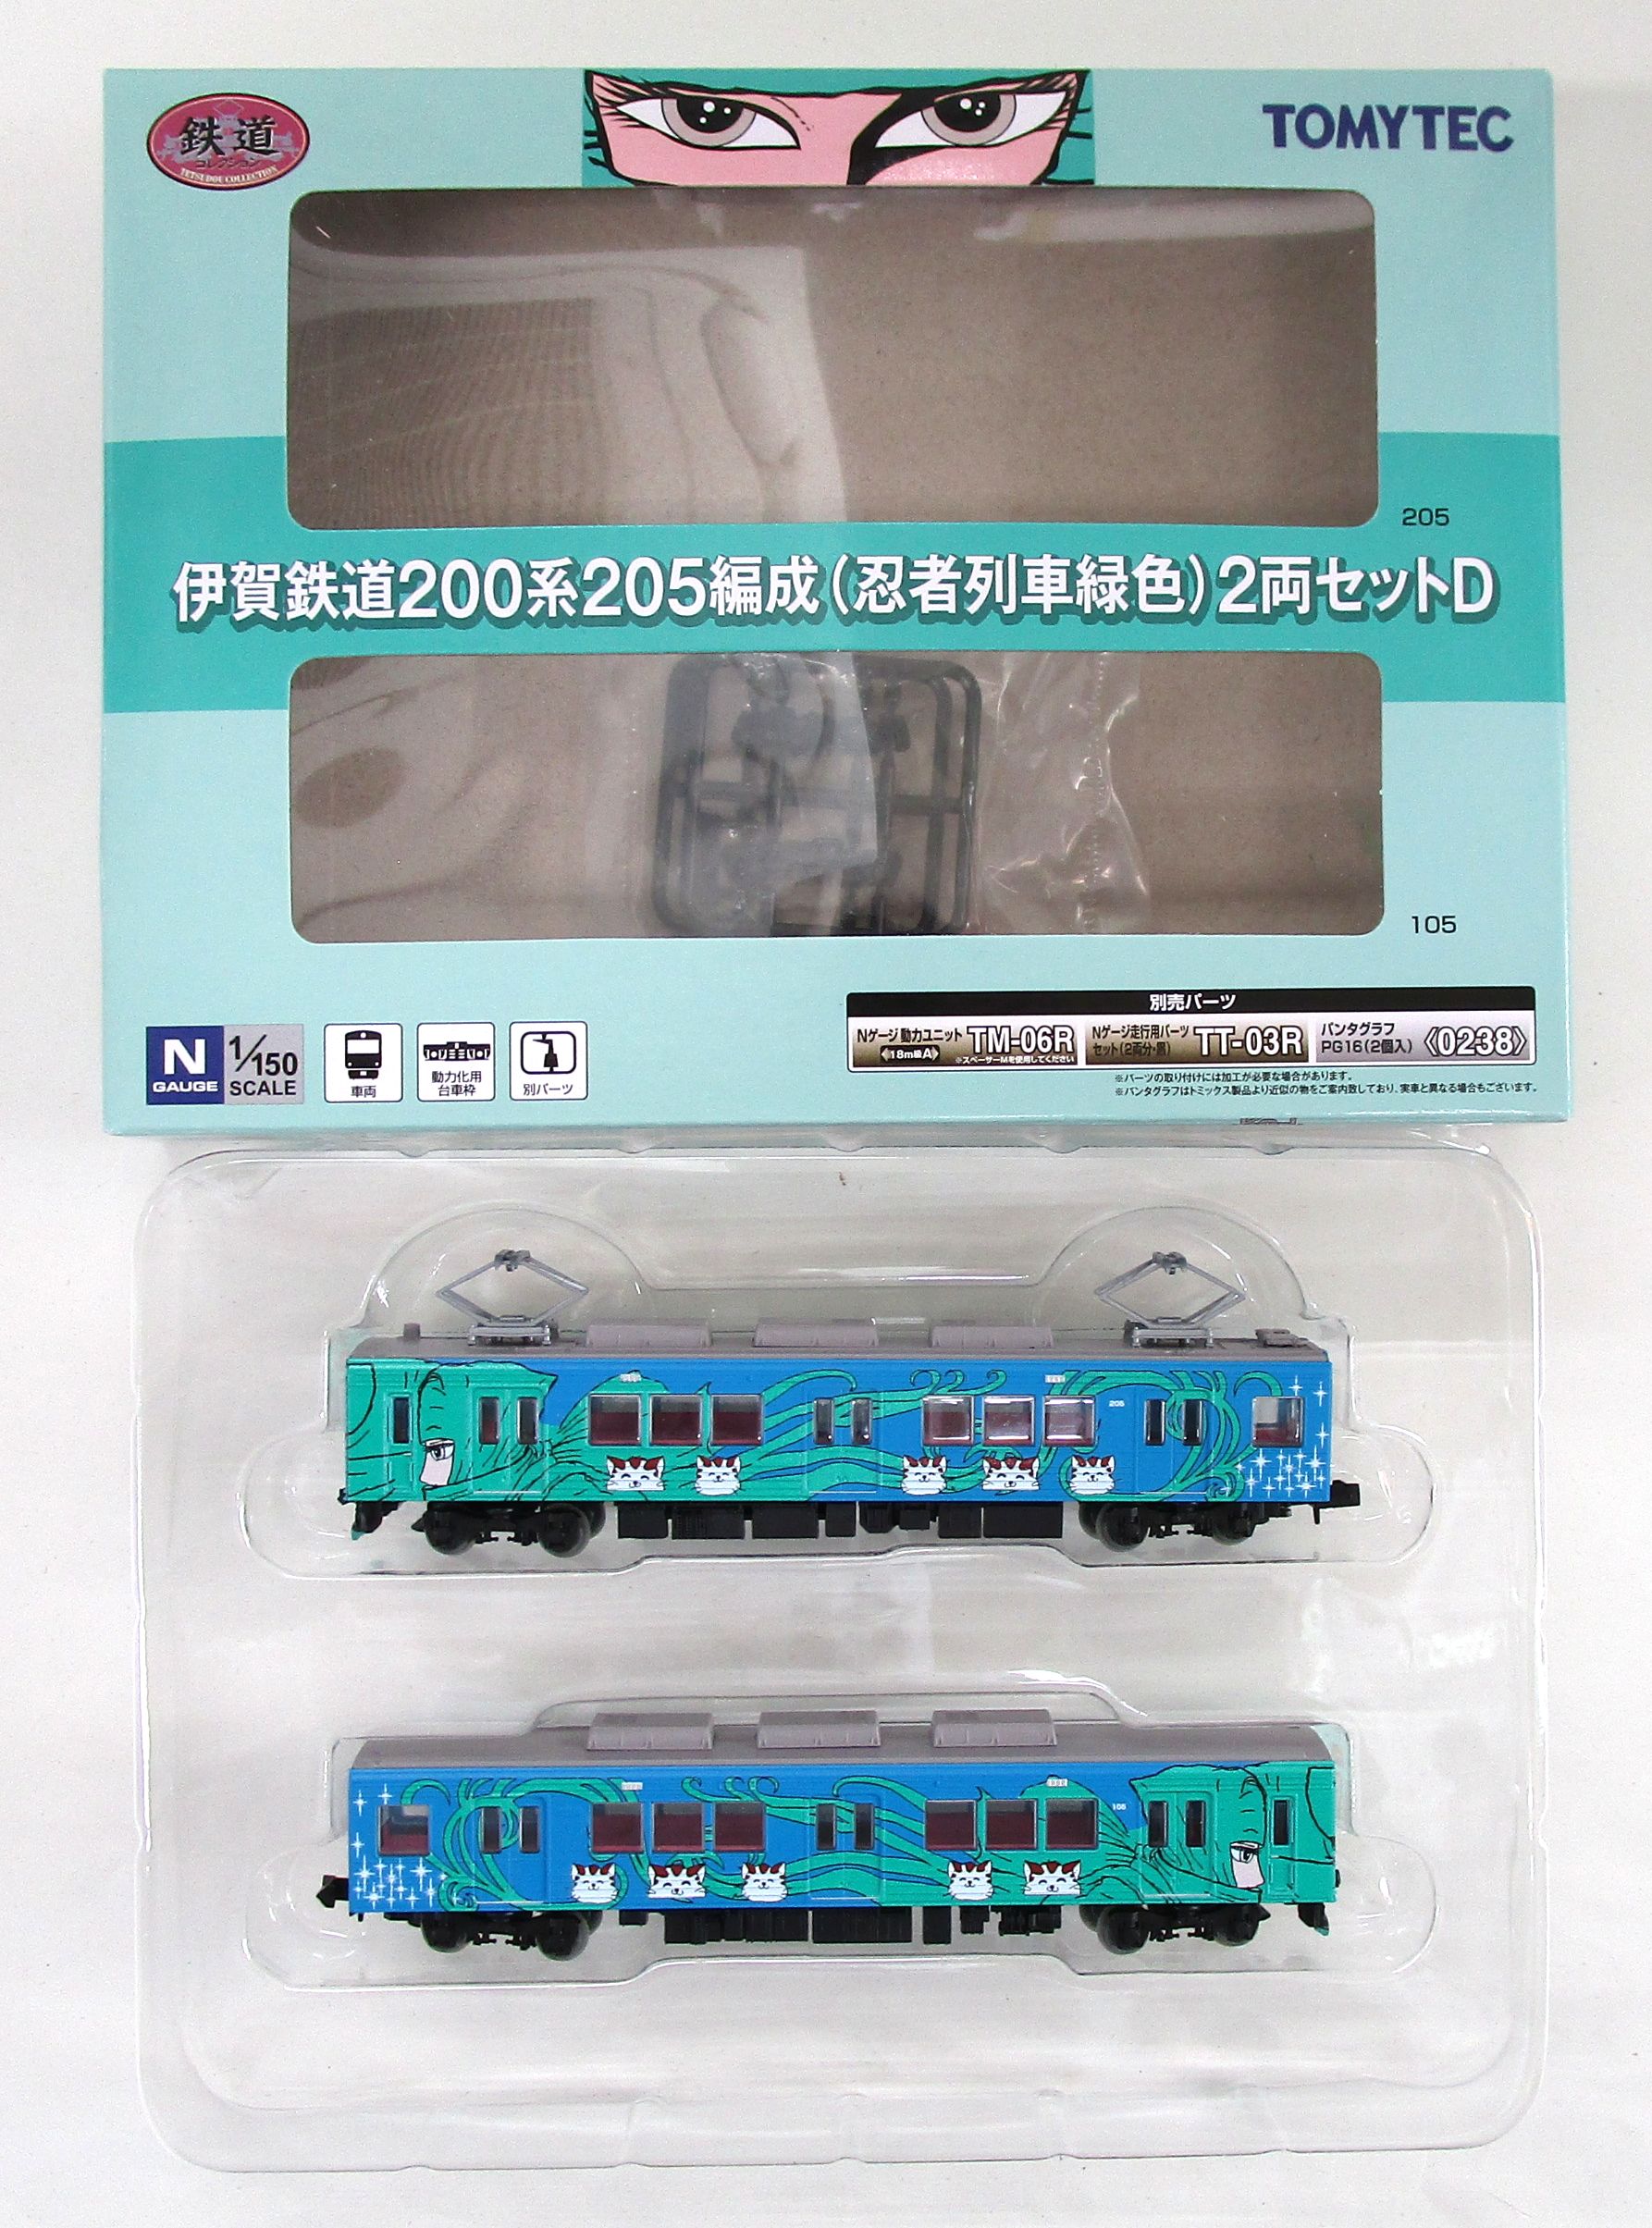 TOMIX 0238 PG16形 パンタグラフ 2個入 トミックス - 鉄道模型